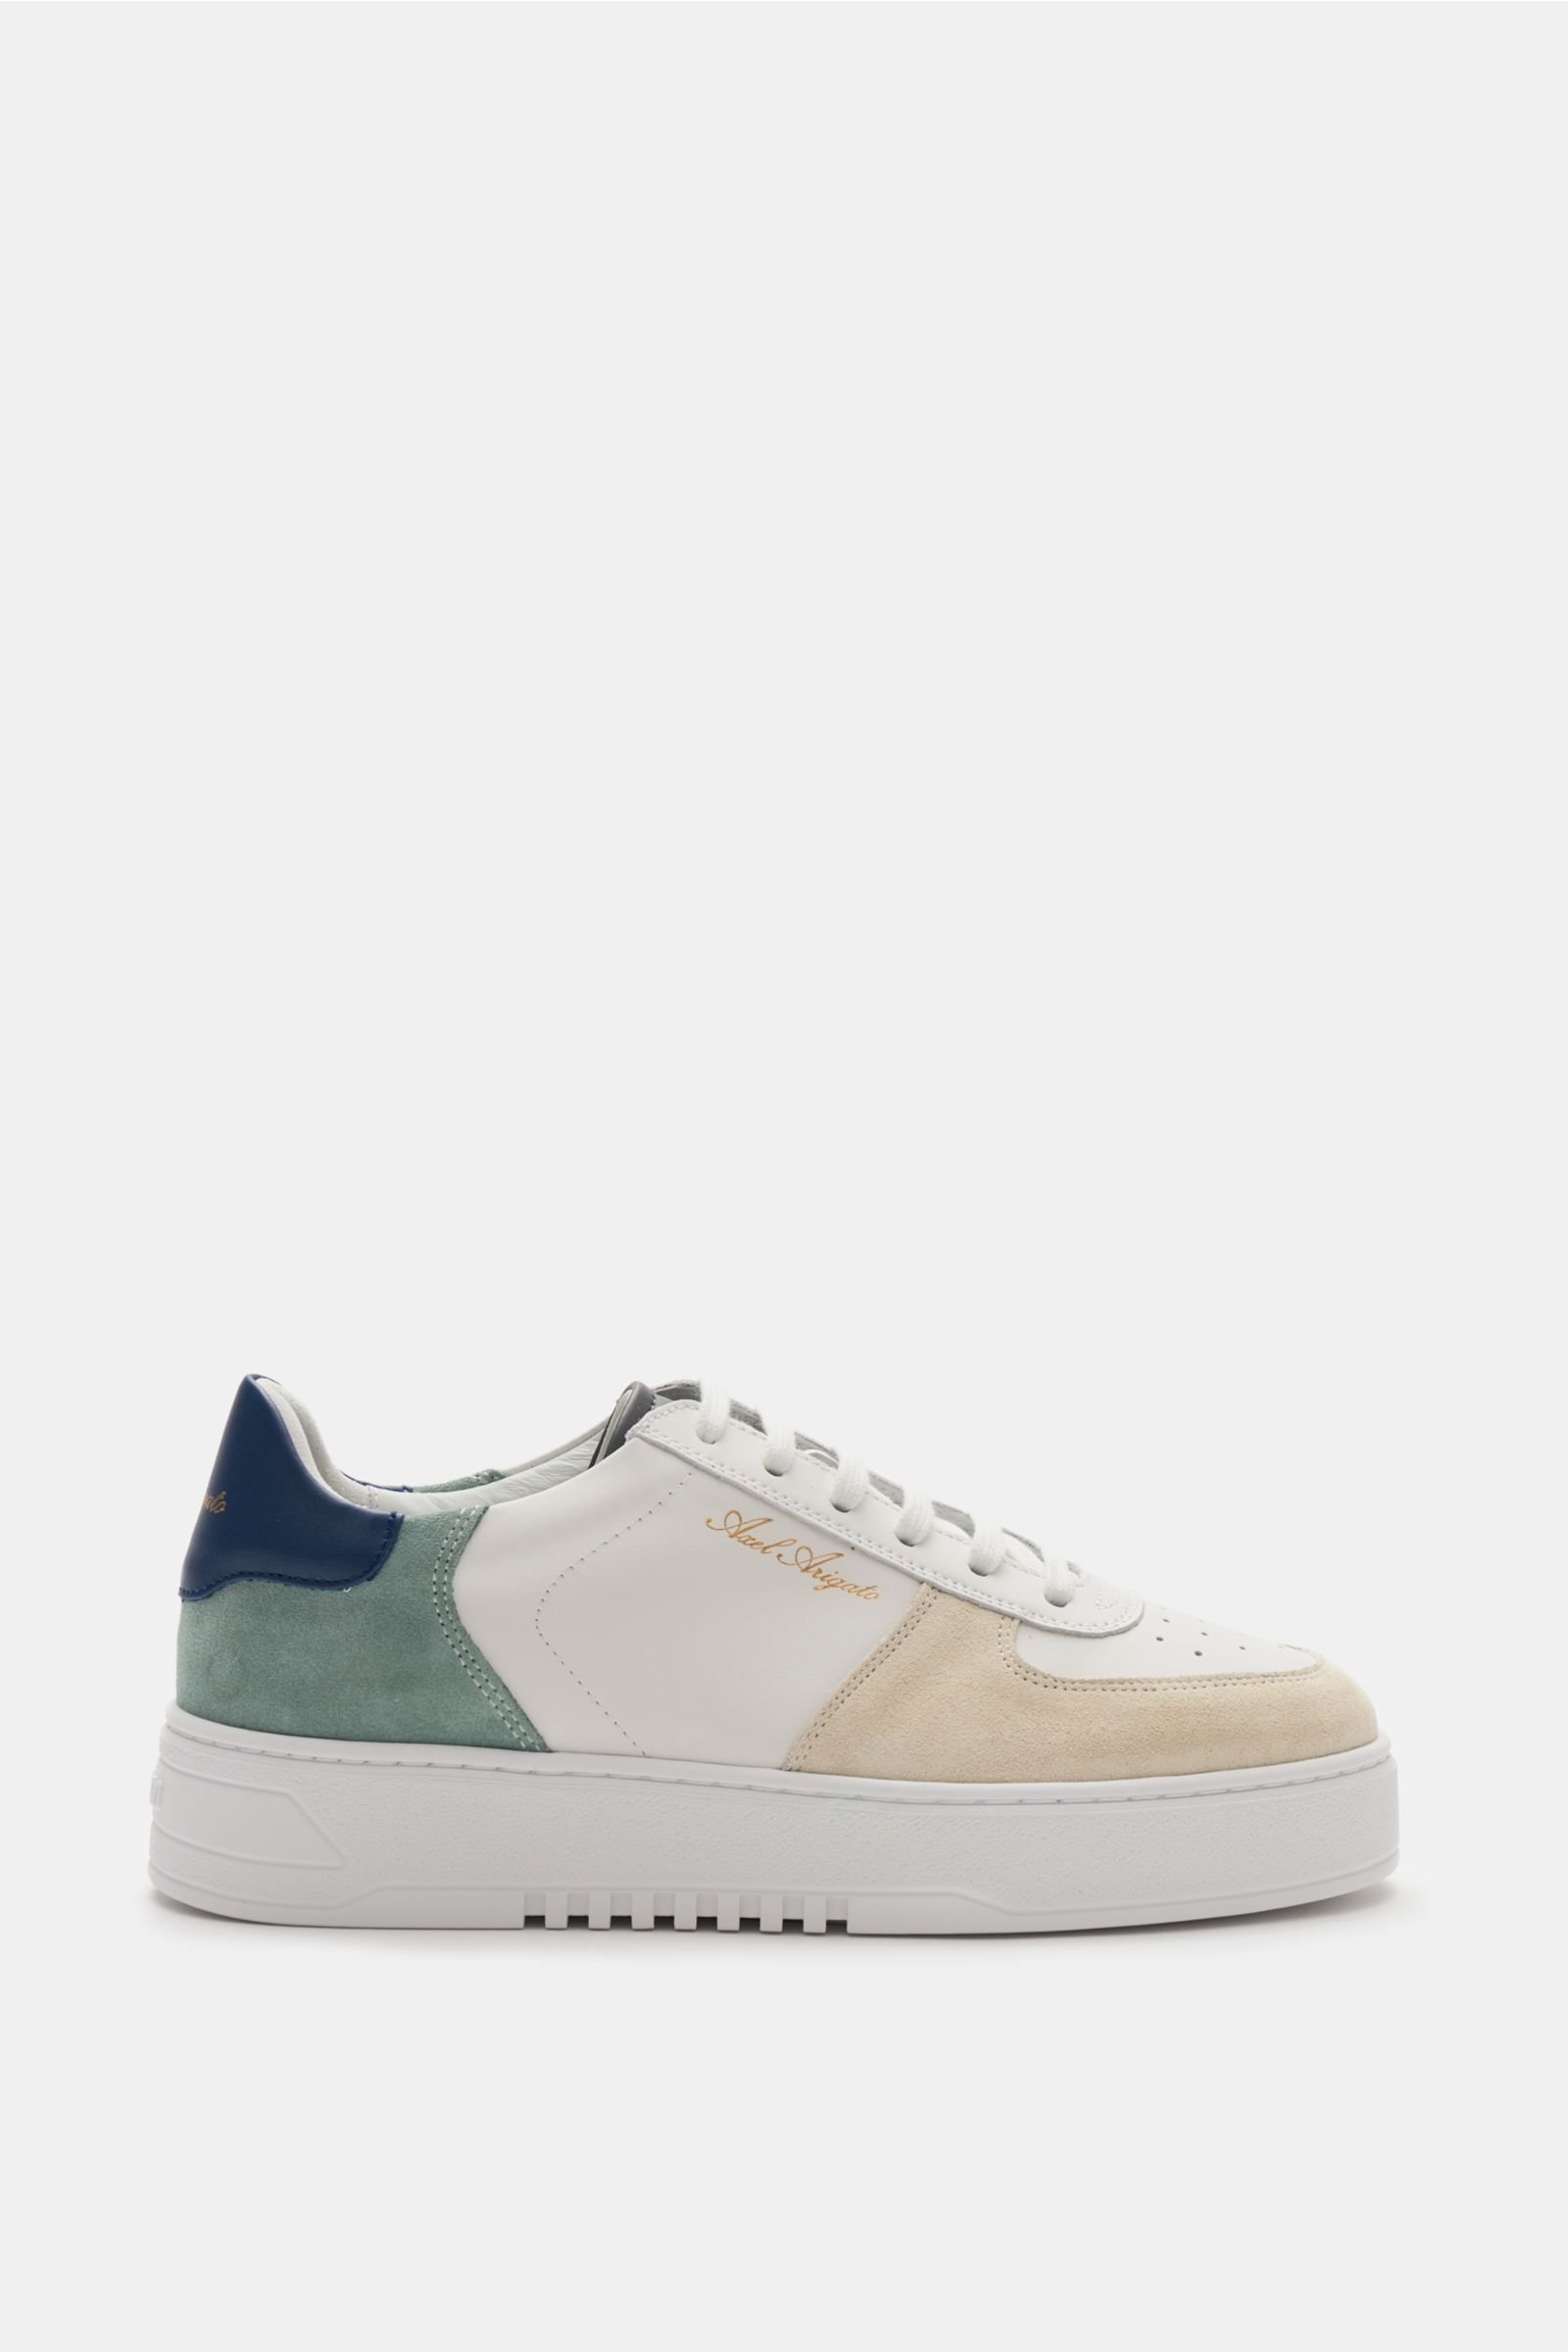 Sneaker 'Orbit' weiß/beige/graugrün